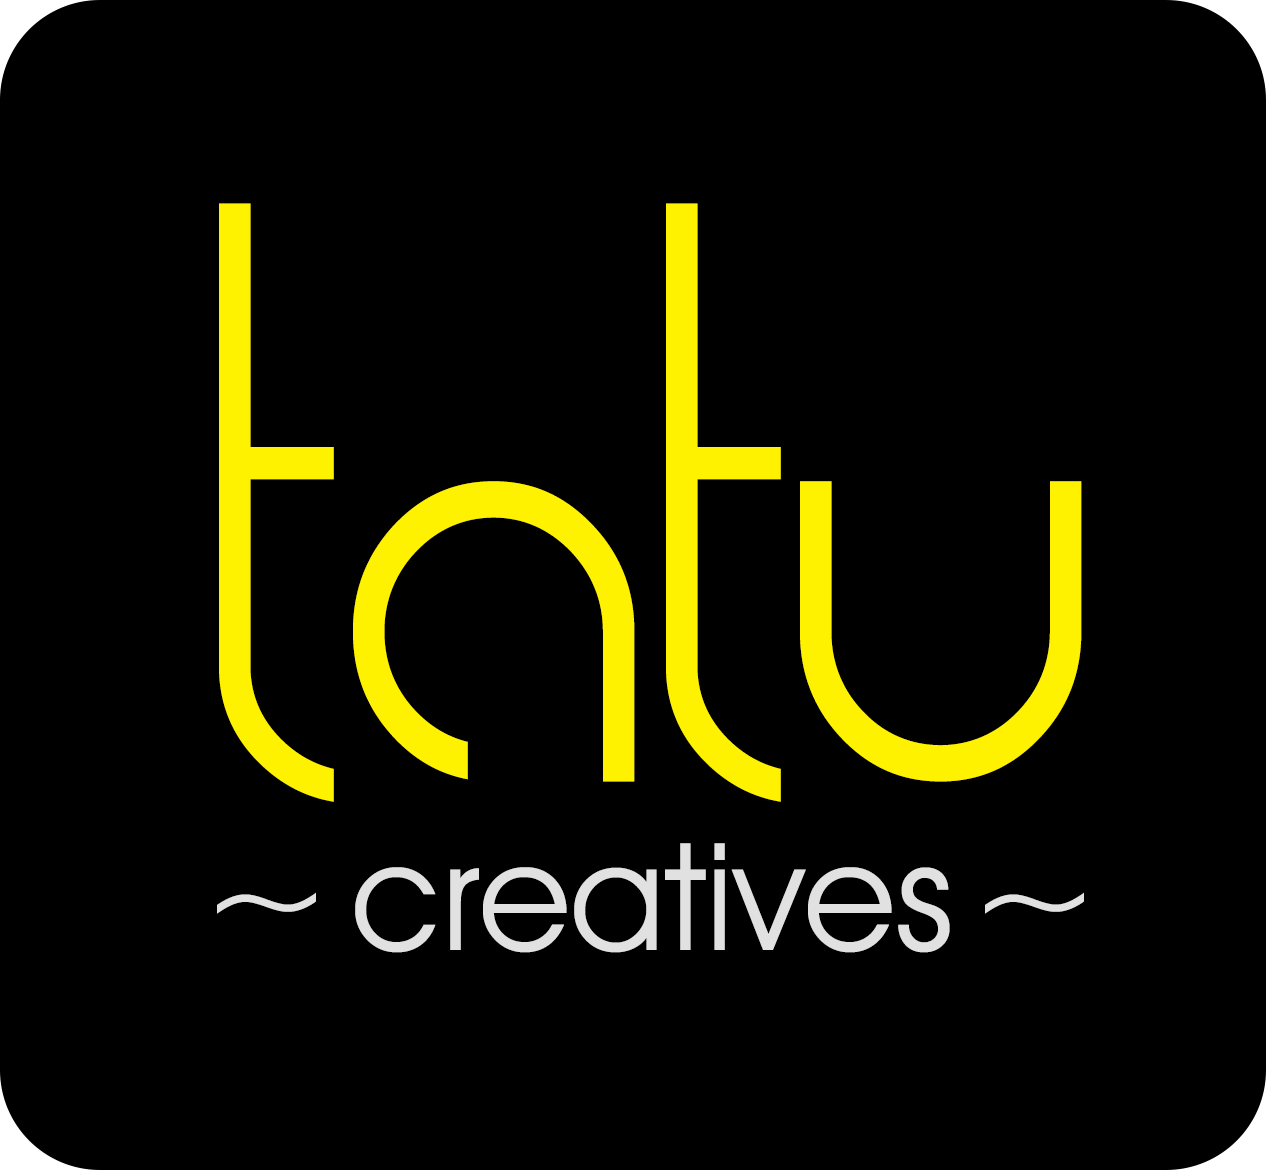 T.A.t.u. Logo - Tatu Creatives - Google+